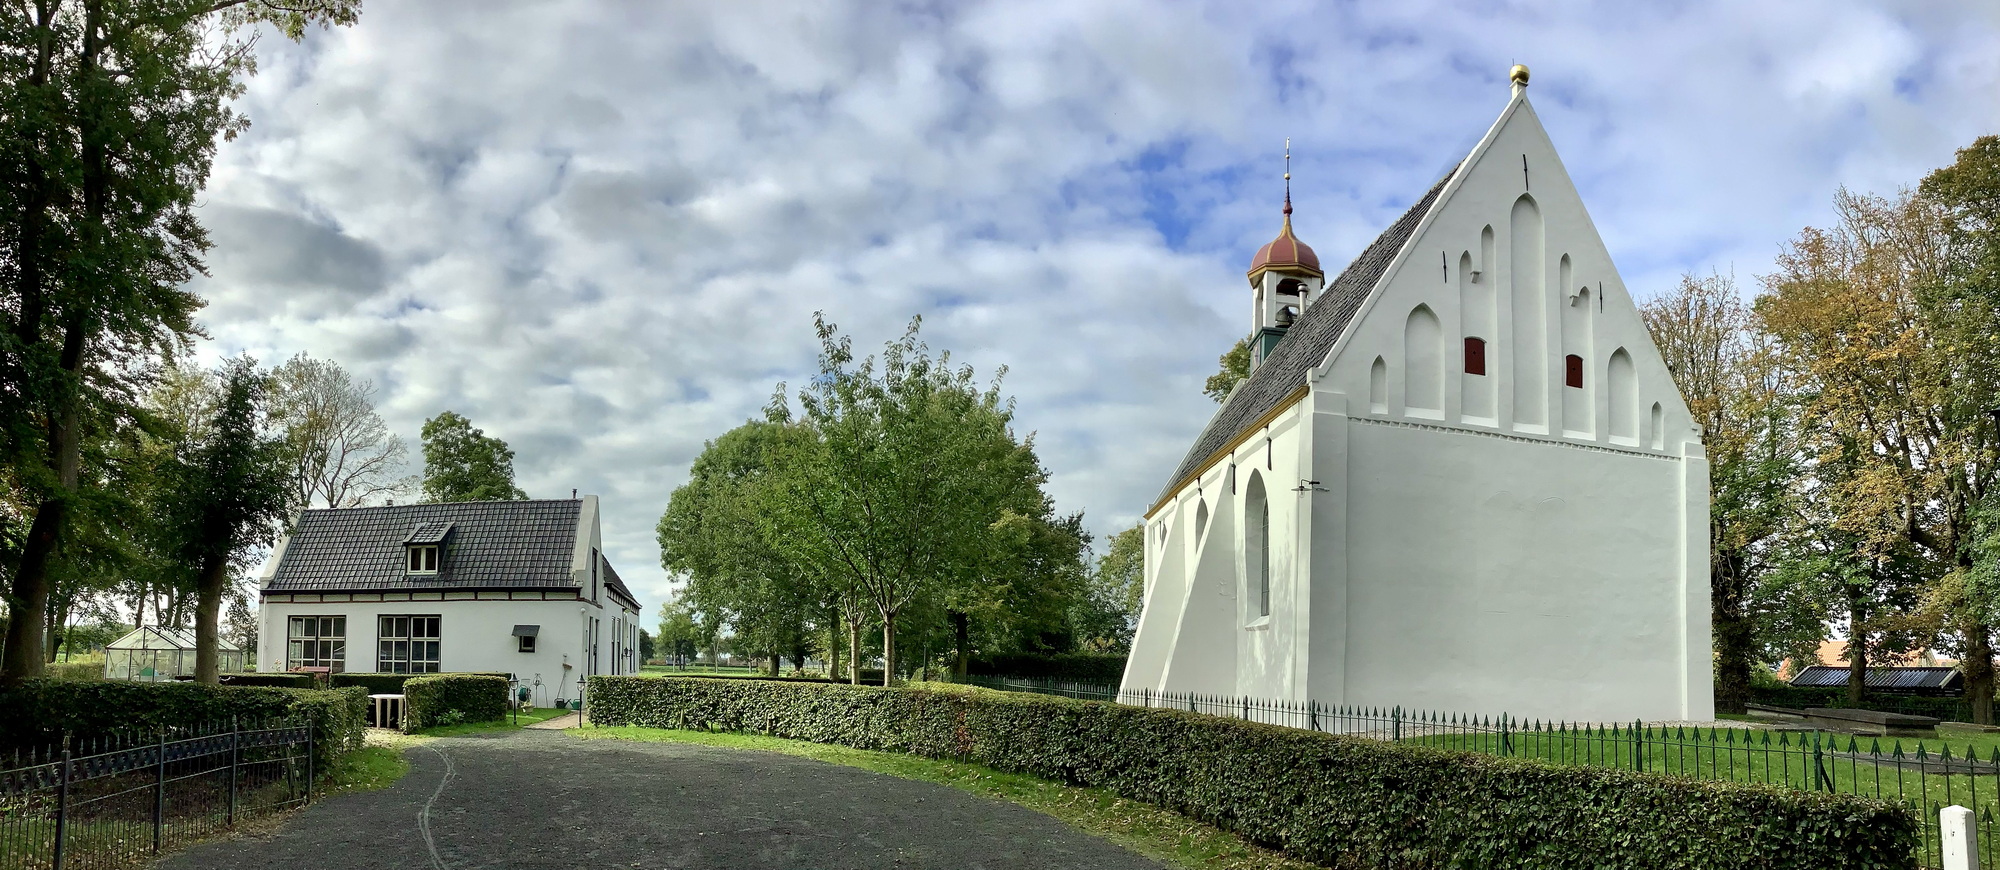 De kerk van Breede. Rijksmonument nr. 38271. Foto: ©Jur Kuipers.